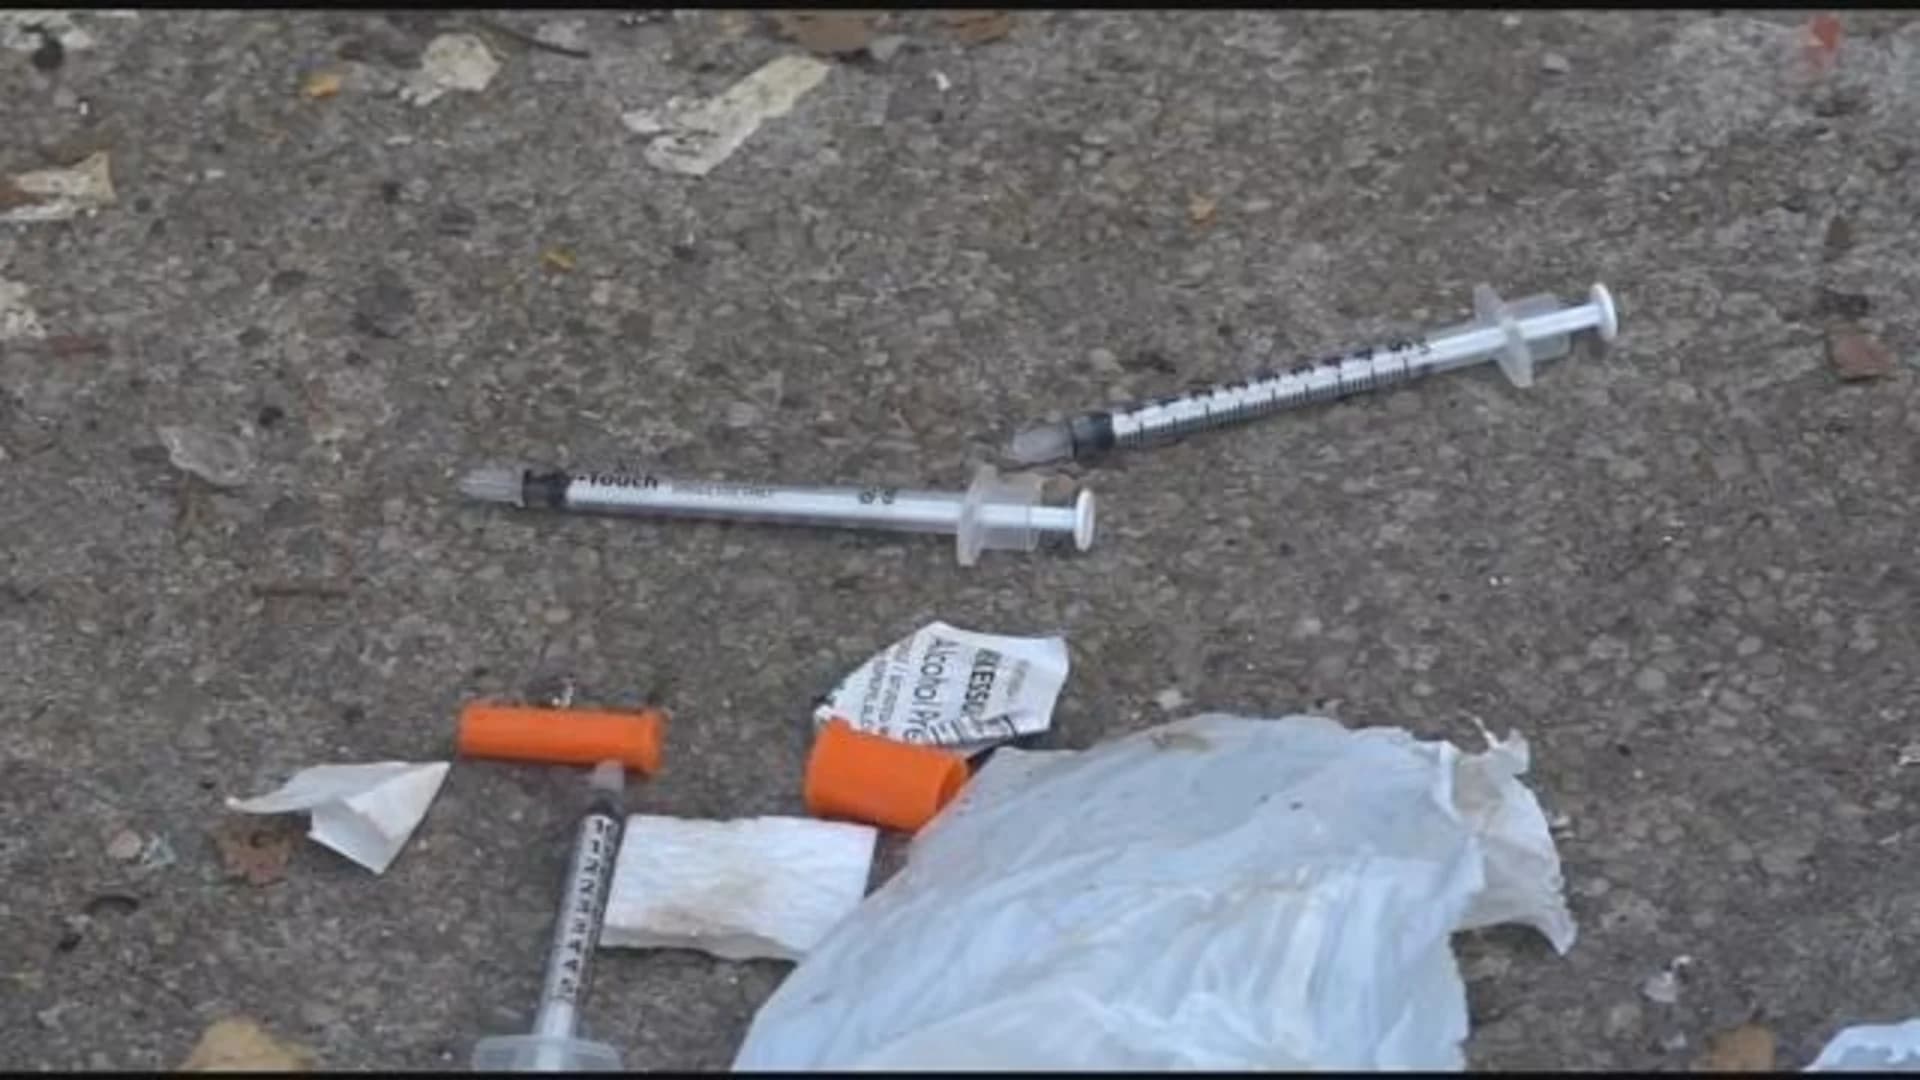 Borough president calls drug needles in school zones 'unacceptable,' vows action